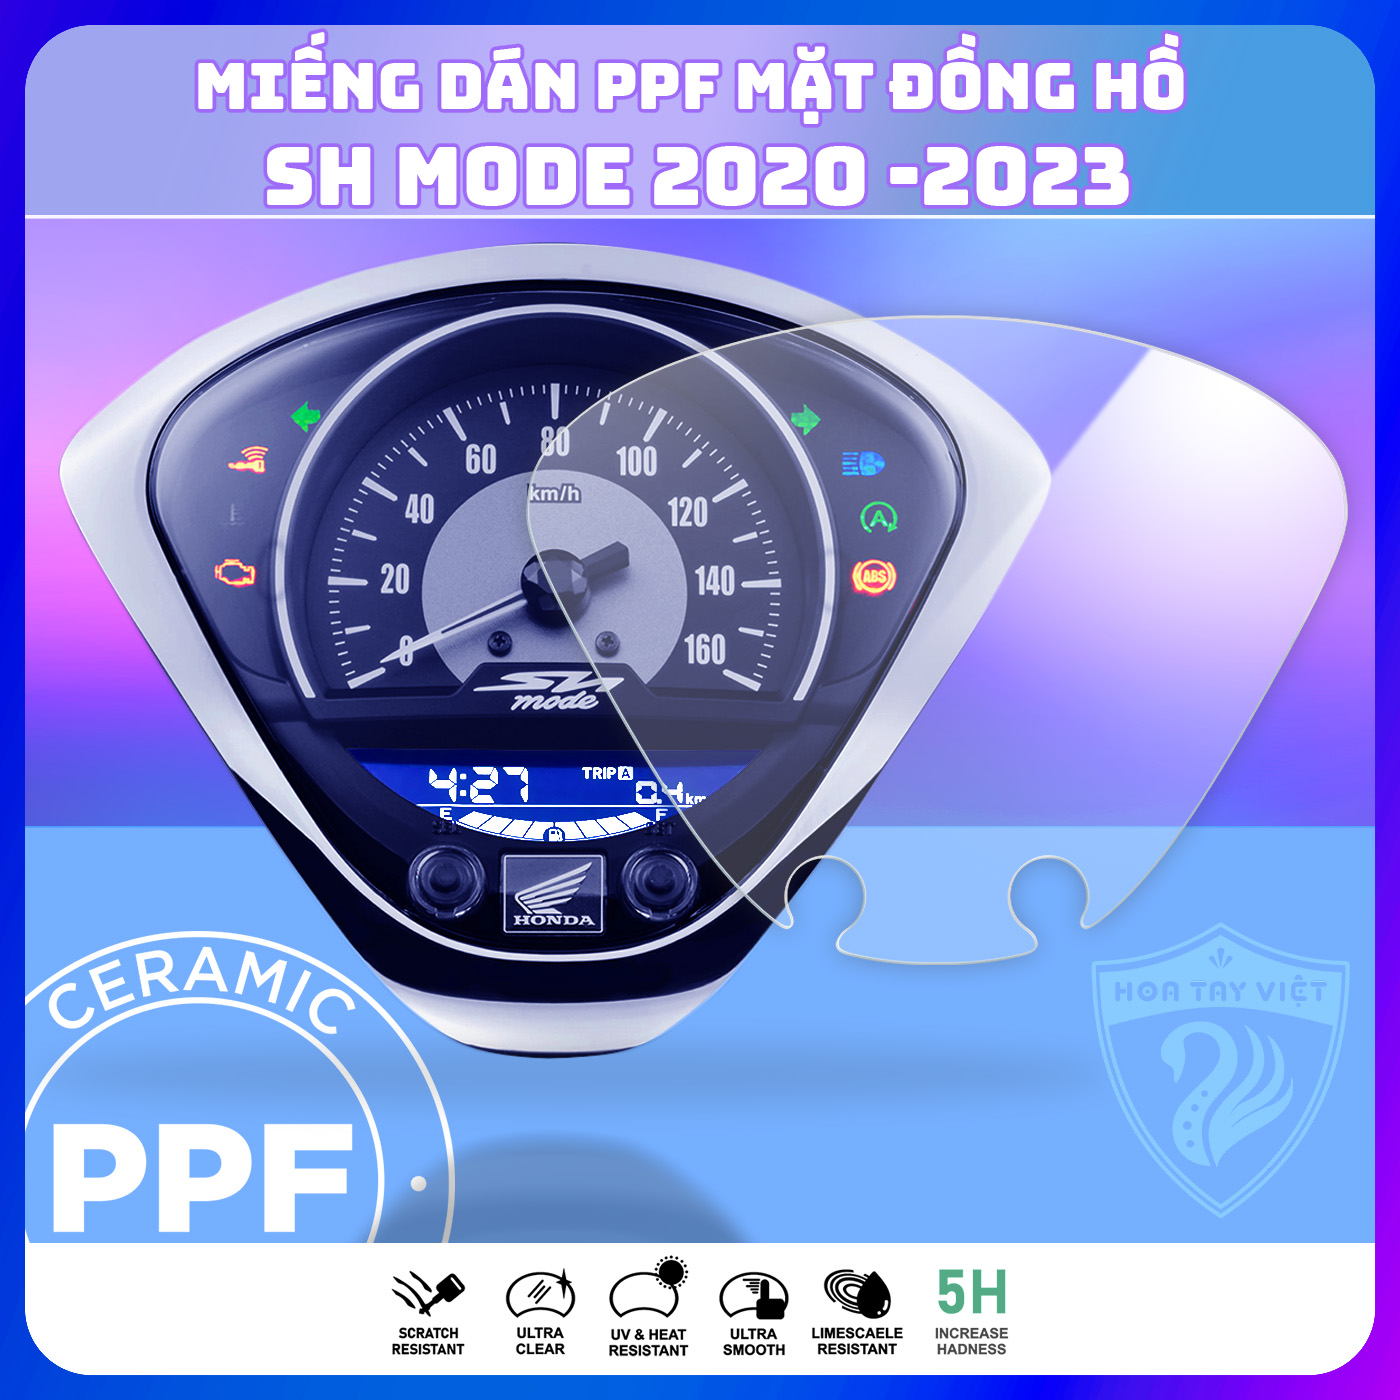 Miếng dán ppf bảo vệ mặt đồng hồ dành cho xe SH Mode 2021